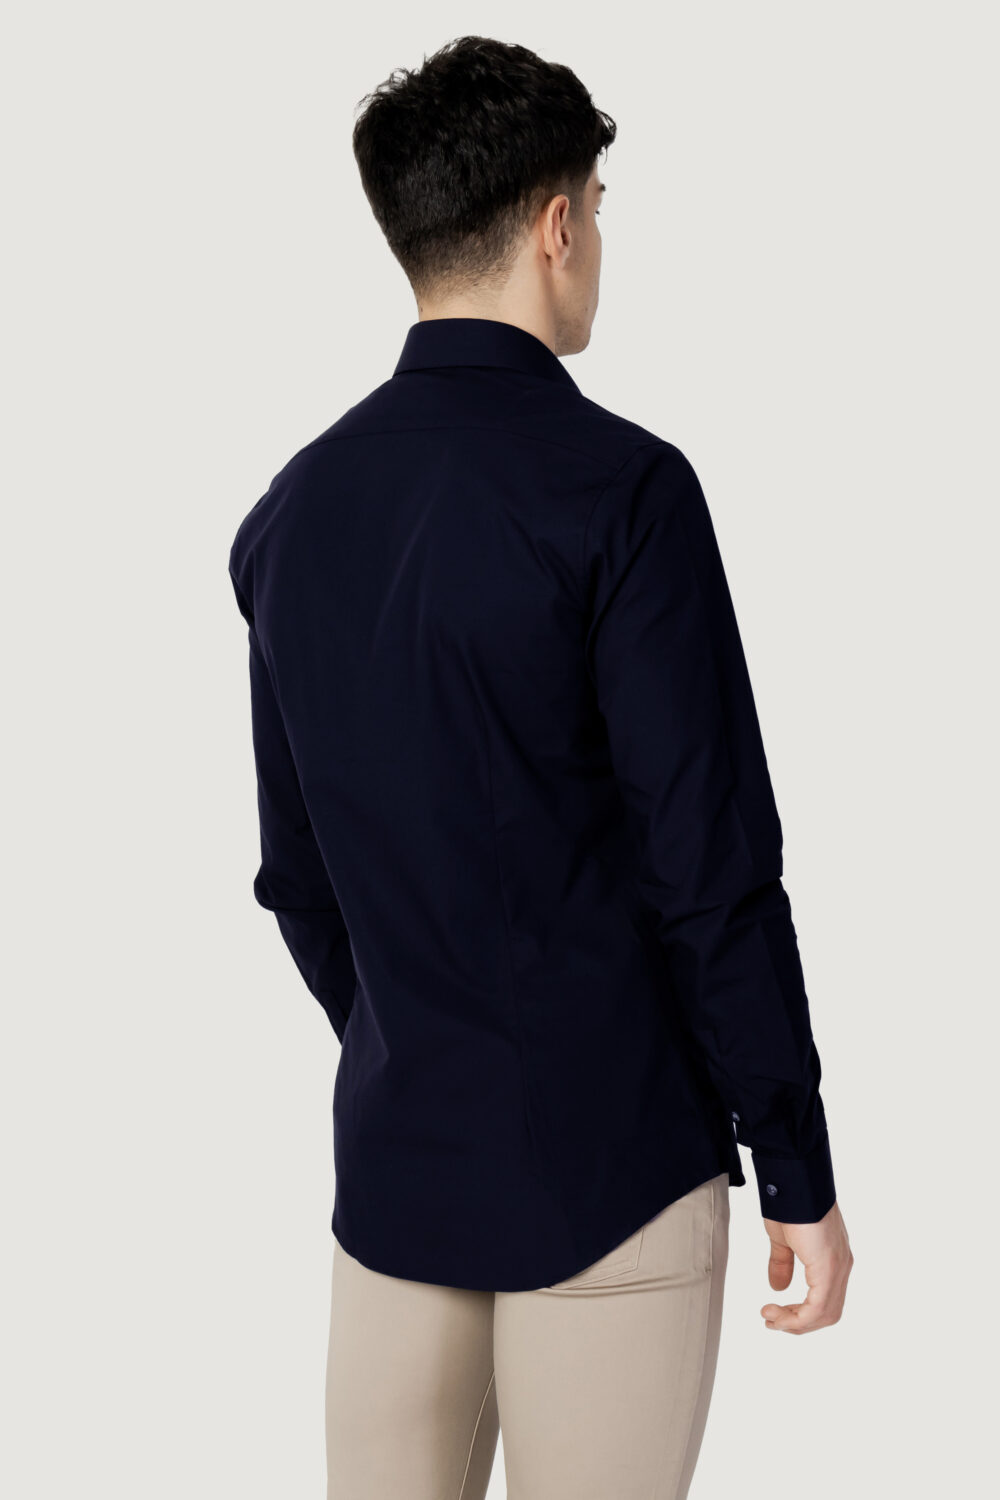 Camicia manica lunga Calvin Klein POPLIN STRETCH SLIM SHIRT Blue scuro - Foto 2